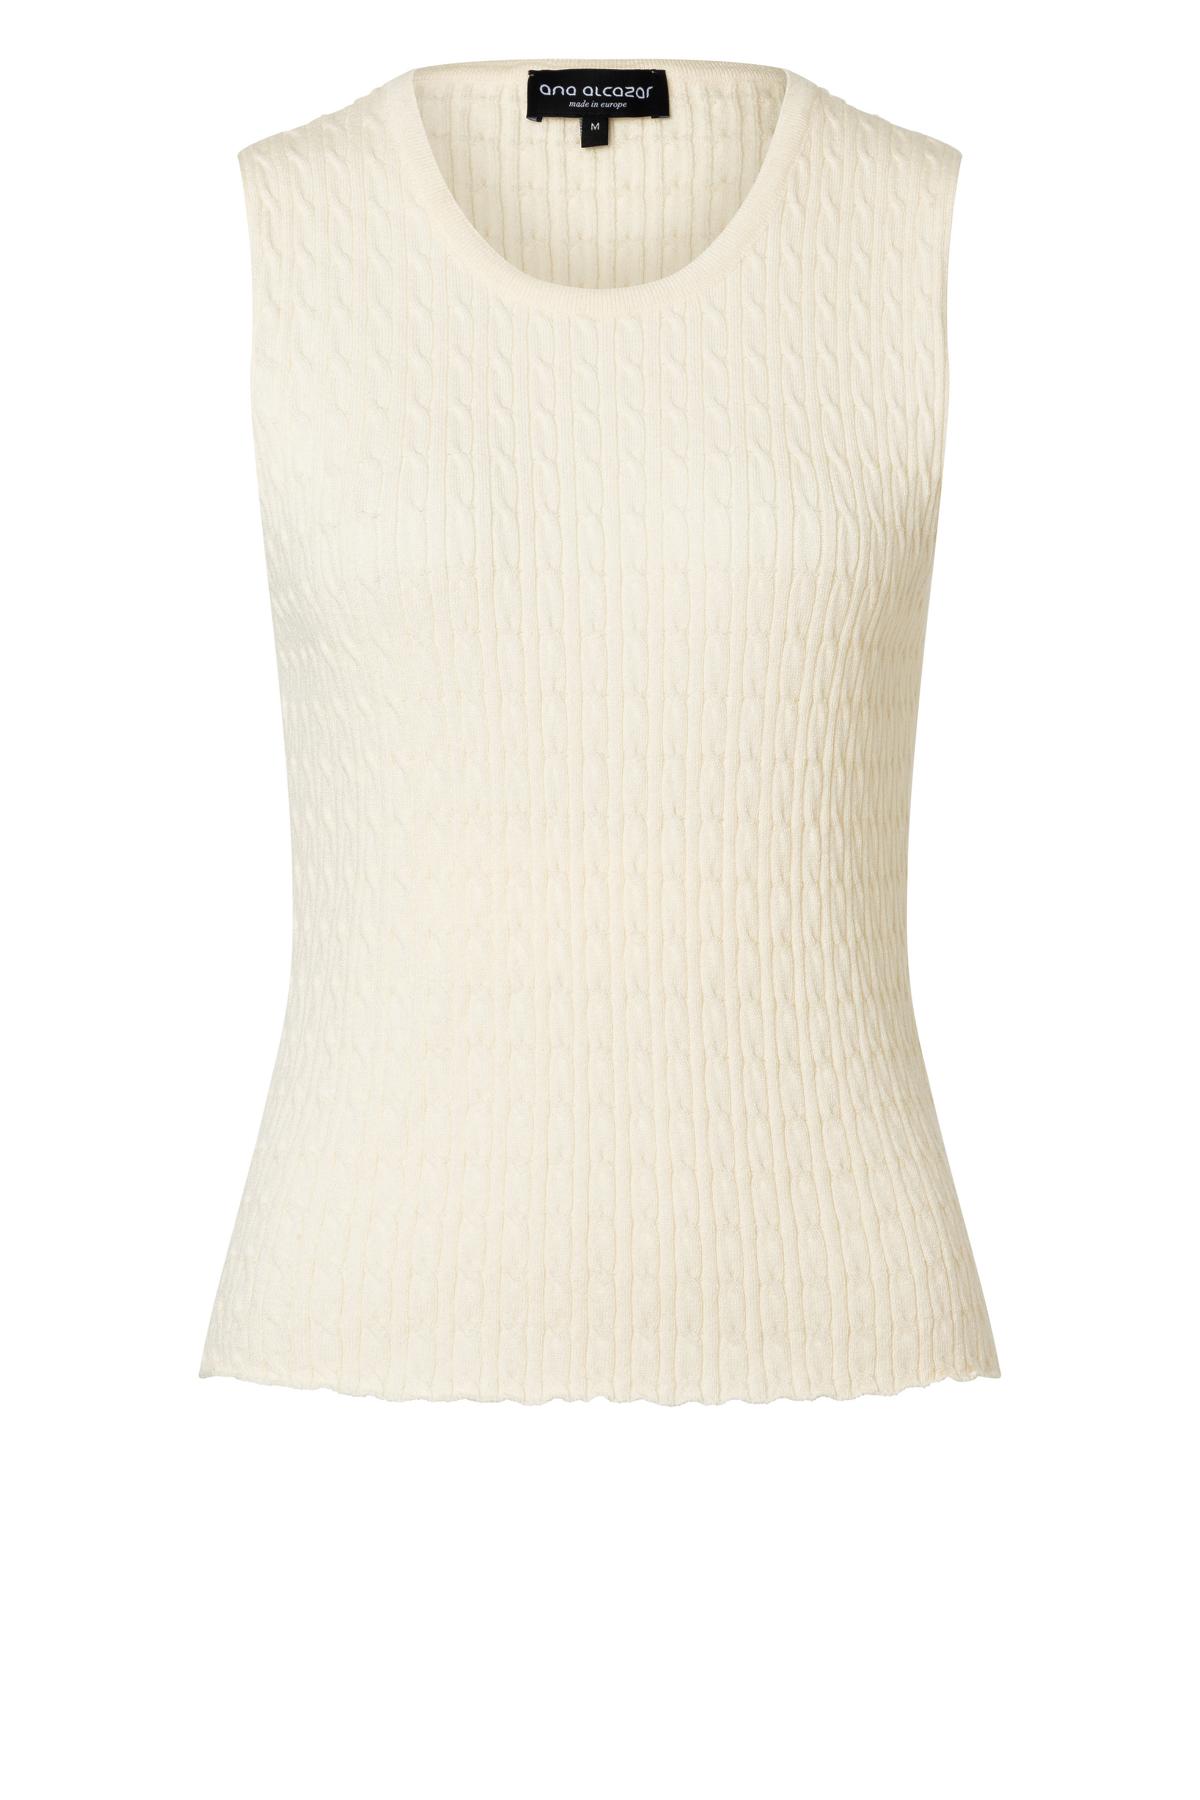 Sleeveless knit-top Zyllo in white | Ana Alcazar